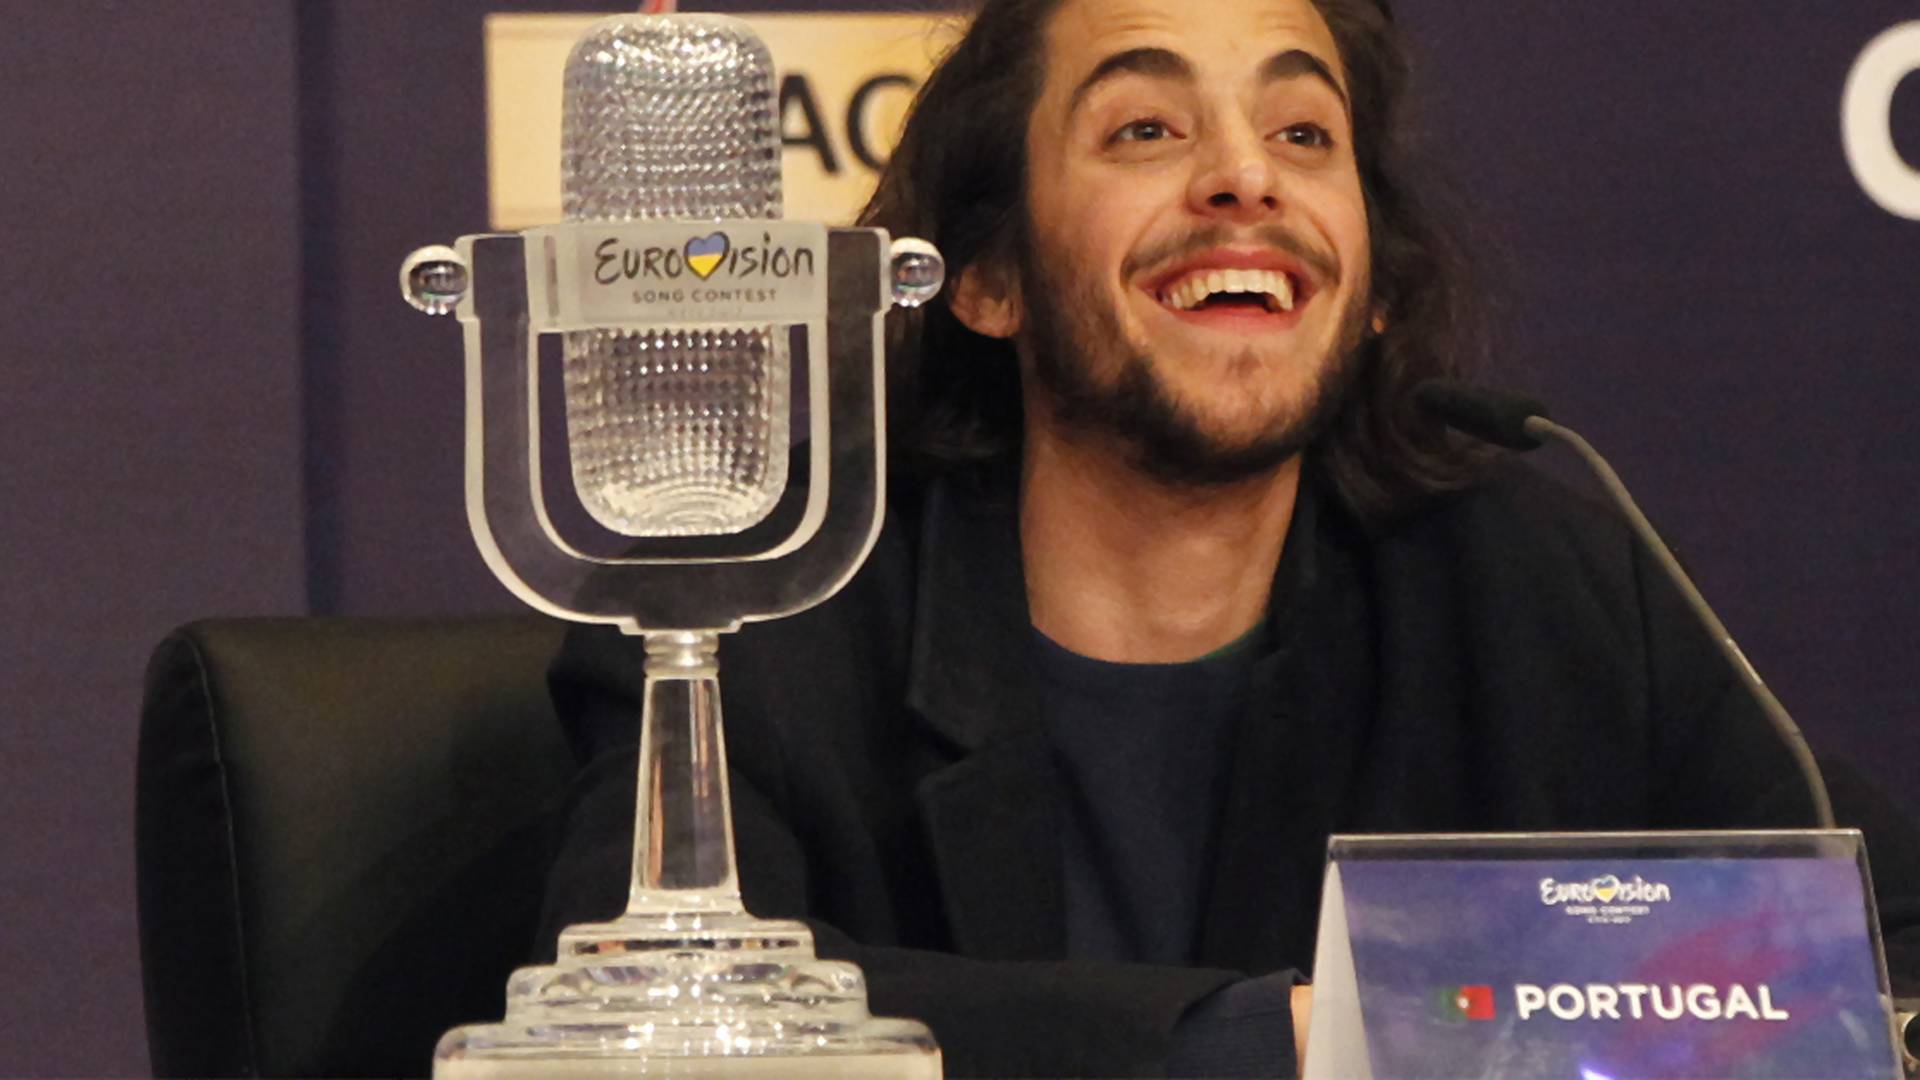 Veľkú cenu Eurovízie 2017 získal spevák z Portugalska: Pozri si jeho vystúpenie